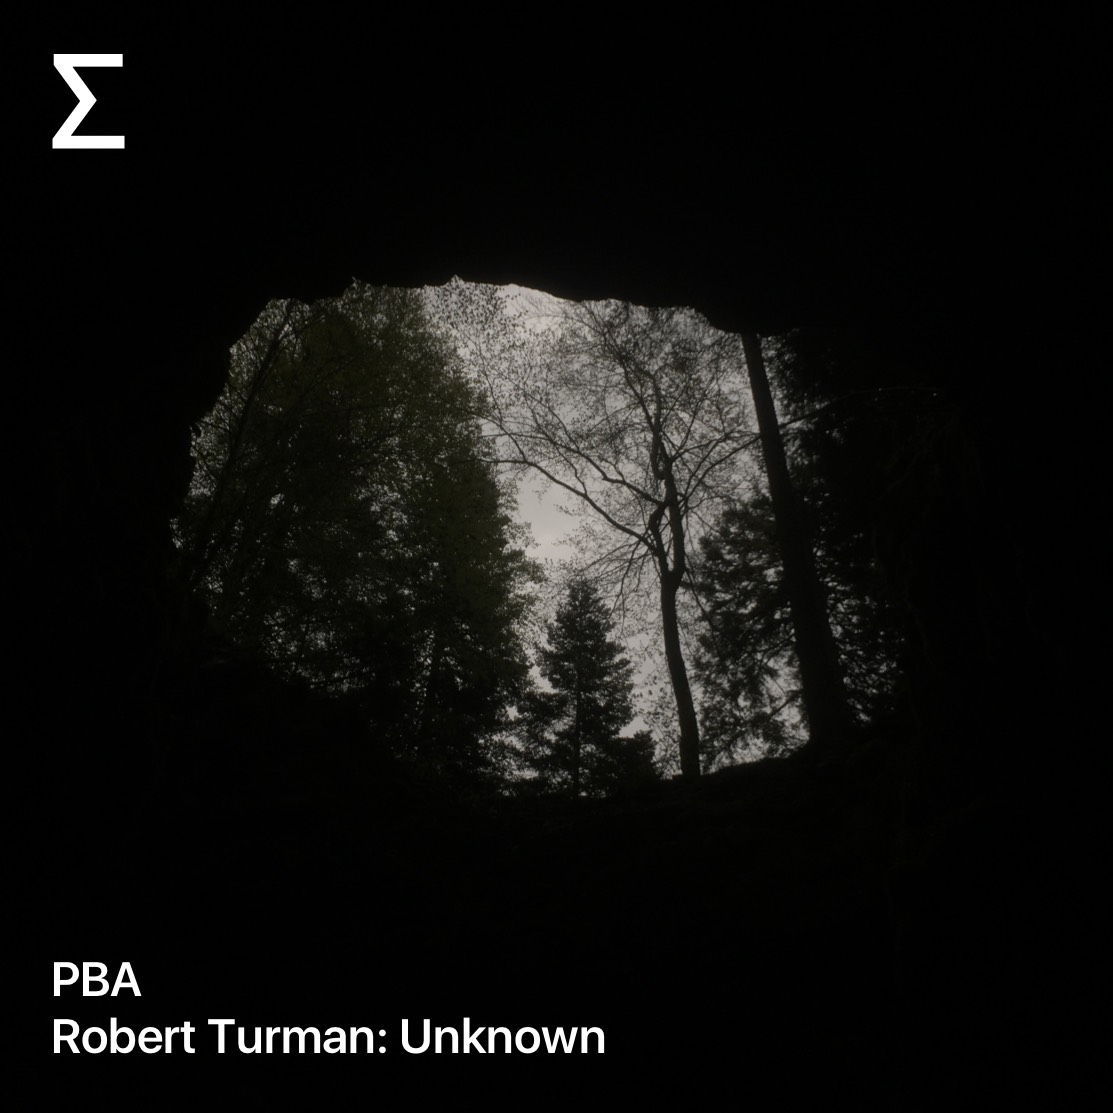 PBA – Robert Turman: Unknown